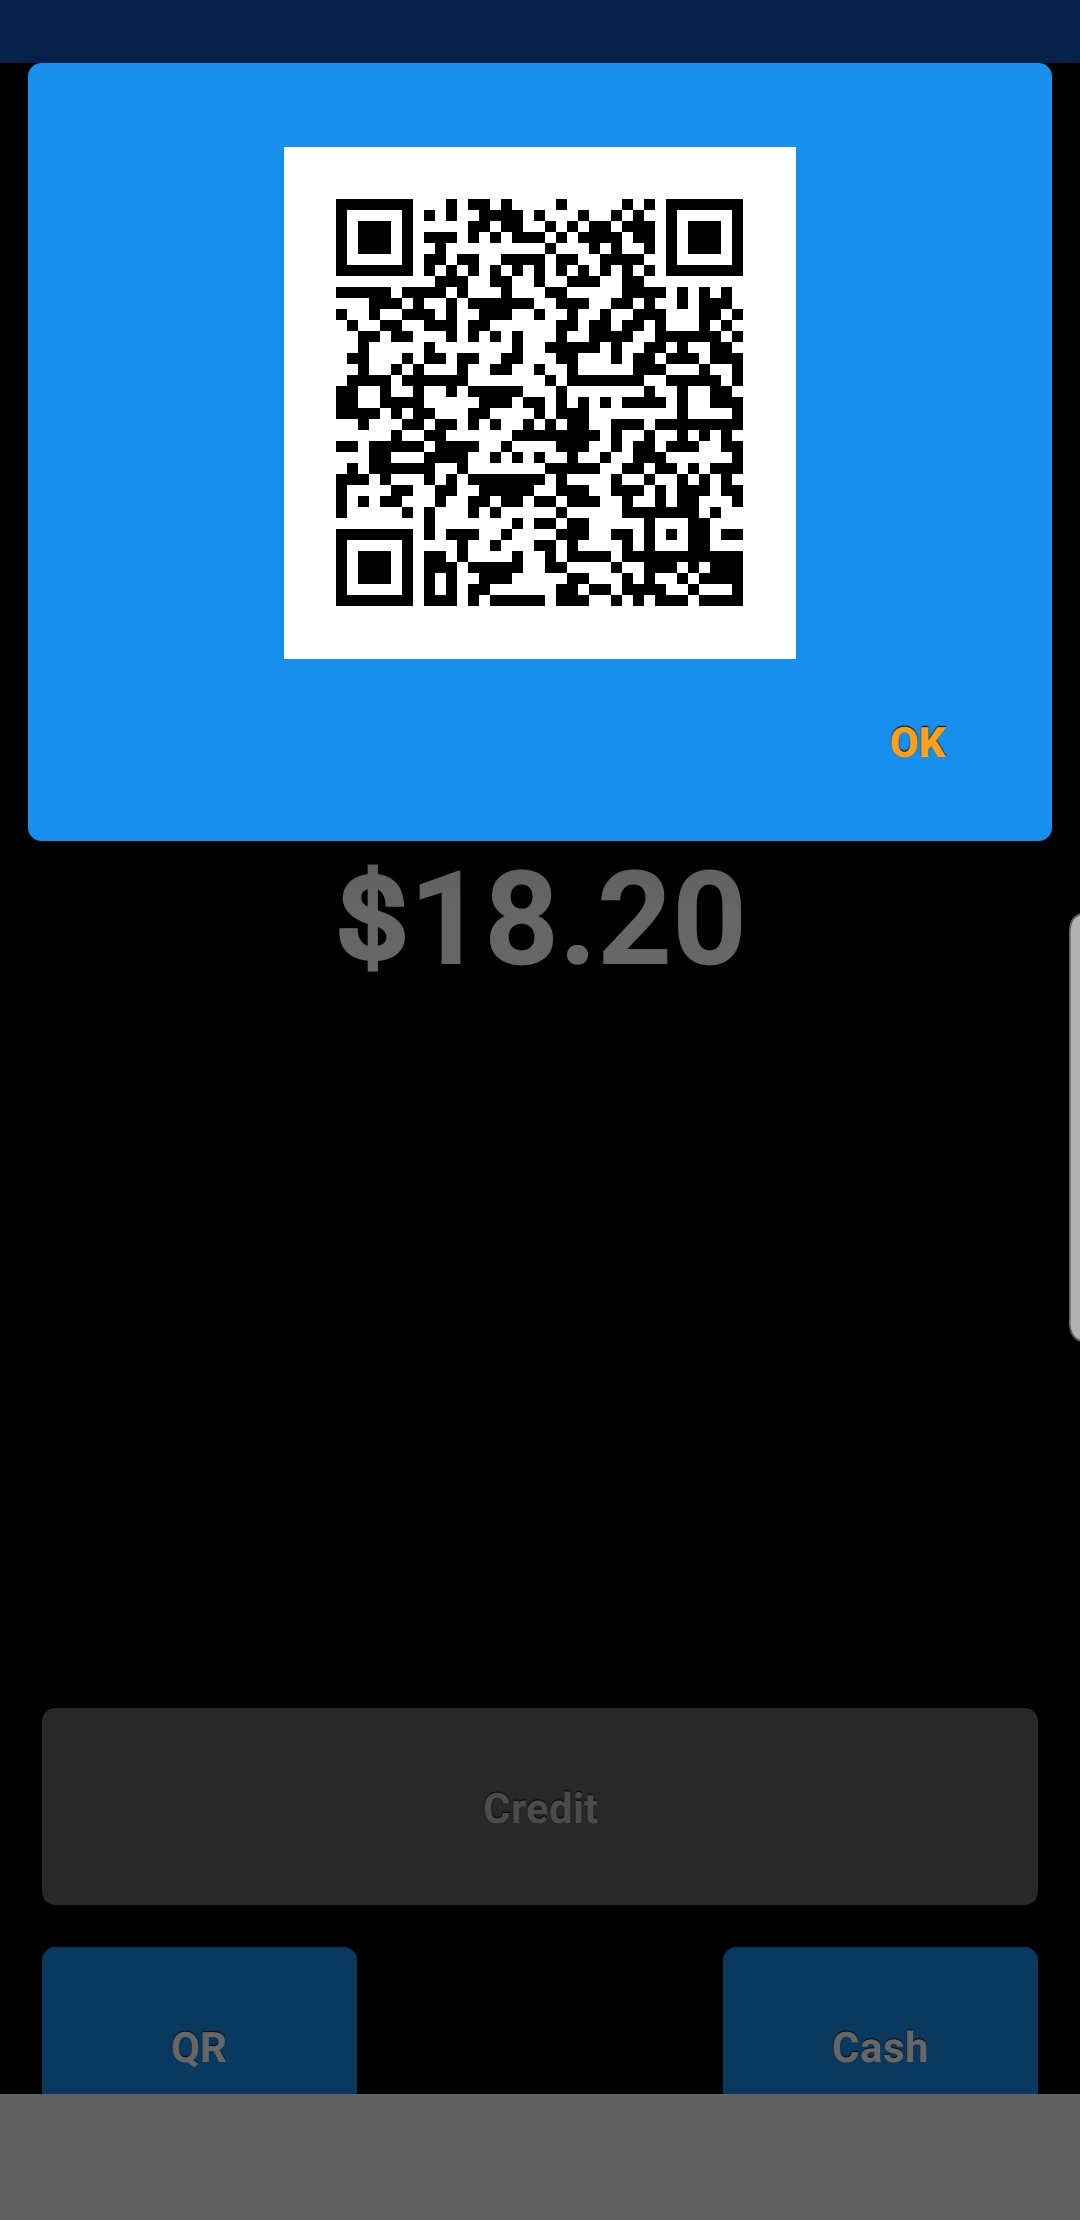 On_V201_-_Mobile_Pay.jpg